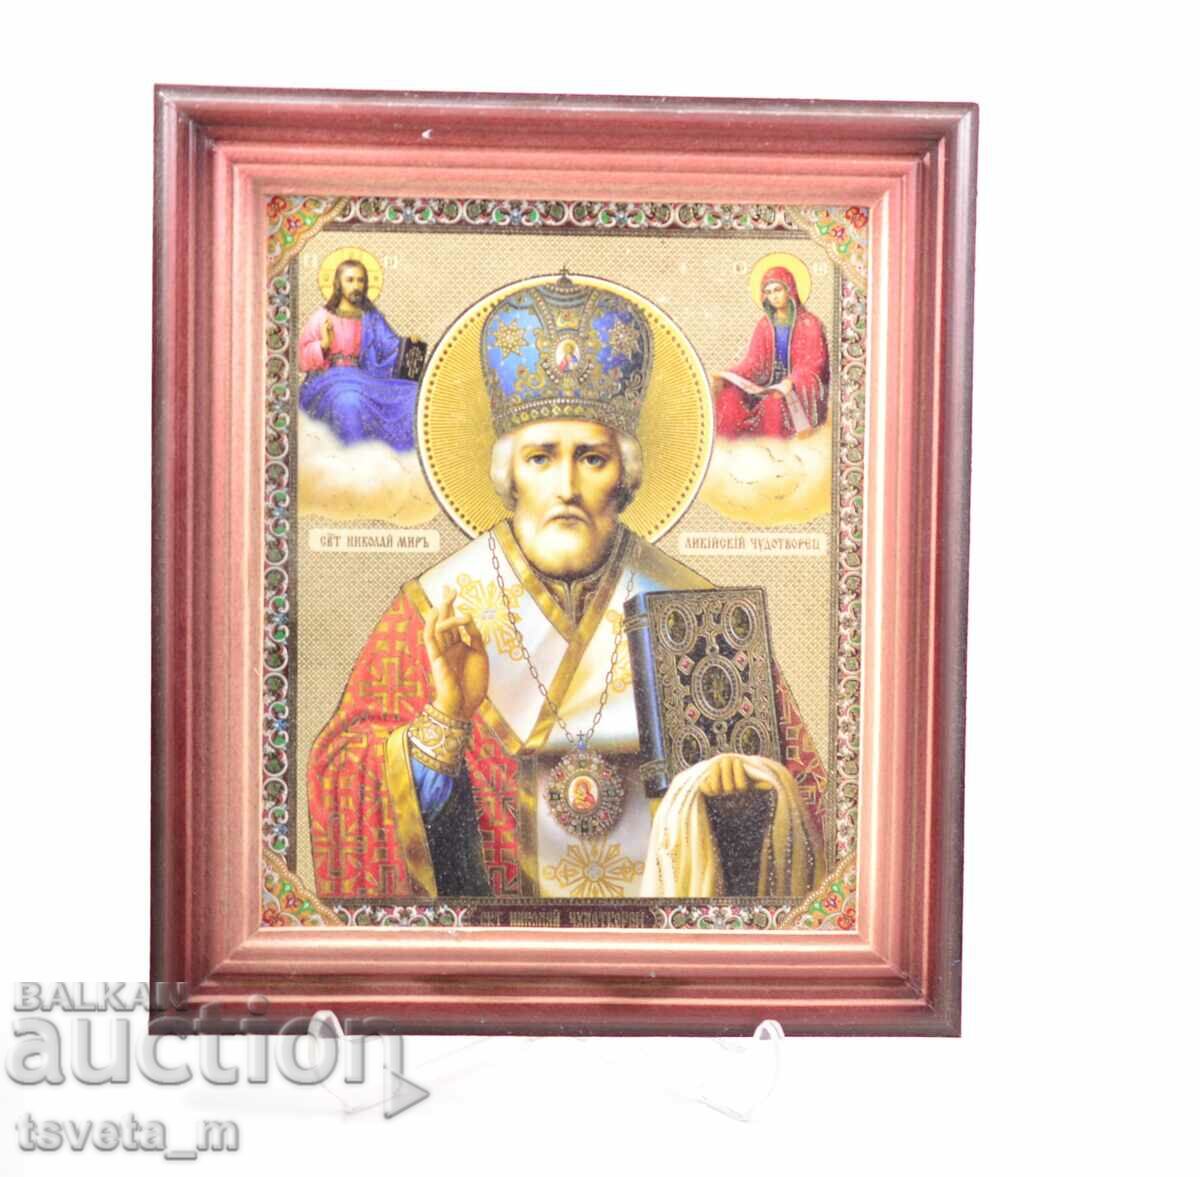 Икона Свети Николай Чудотворец